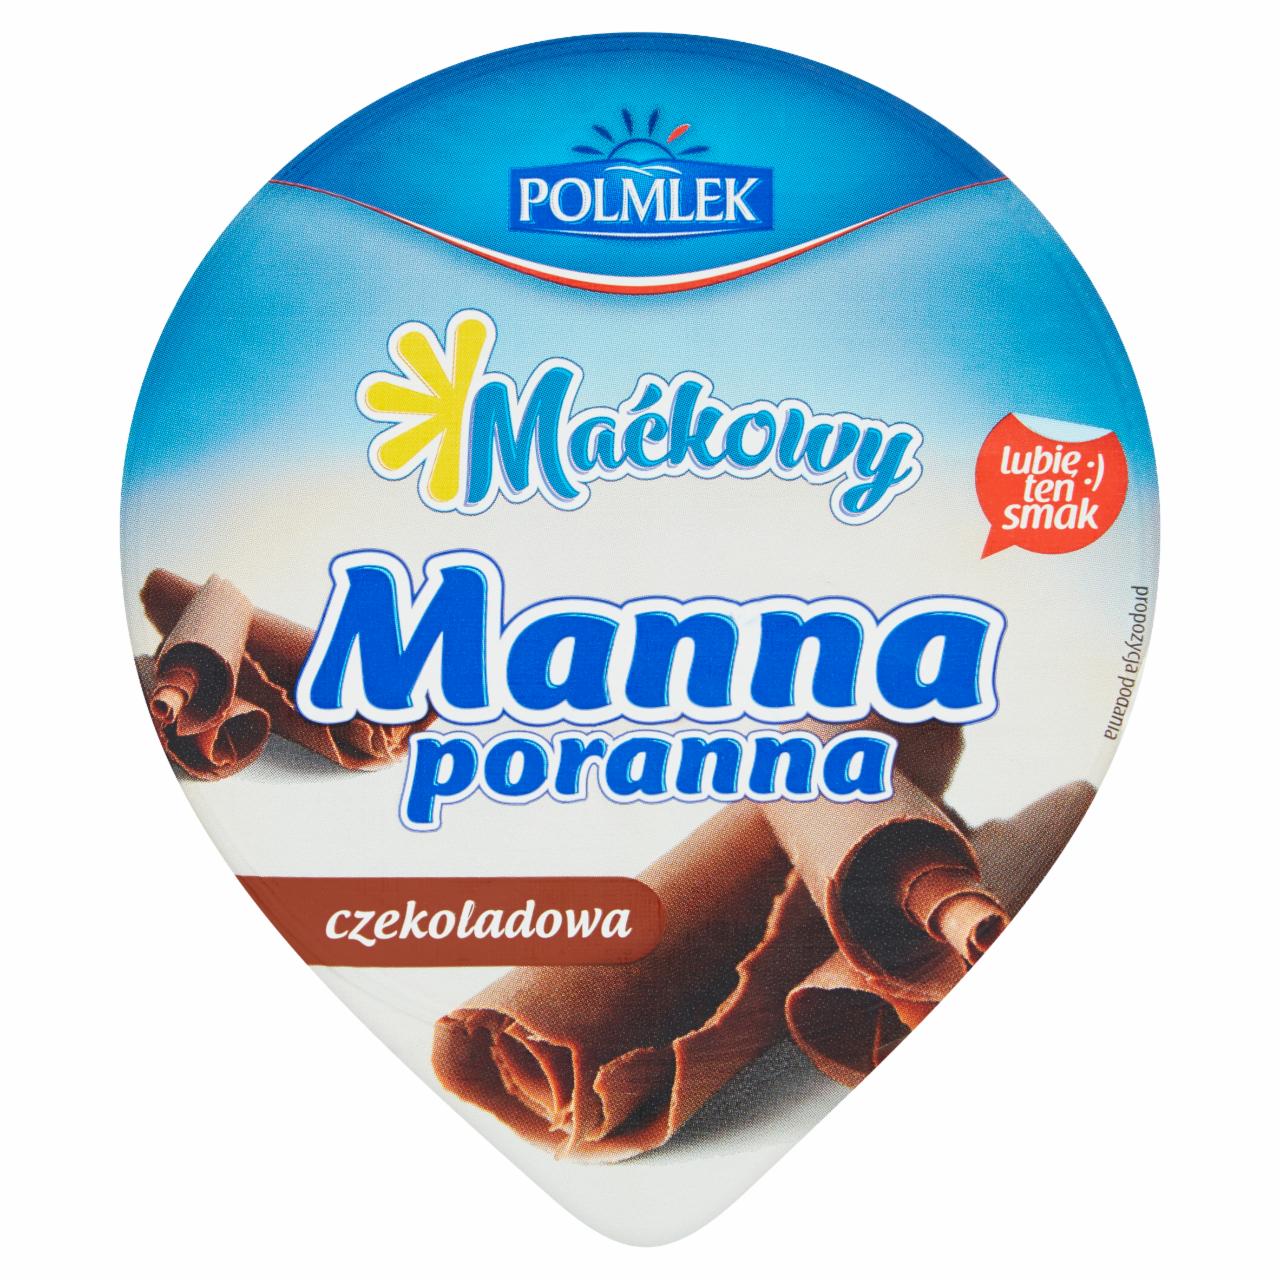 Zdjęcia - Polmlek Maćkowy Manna poranna czekoladowa 150 g